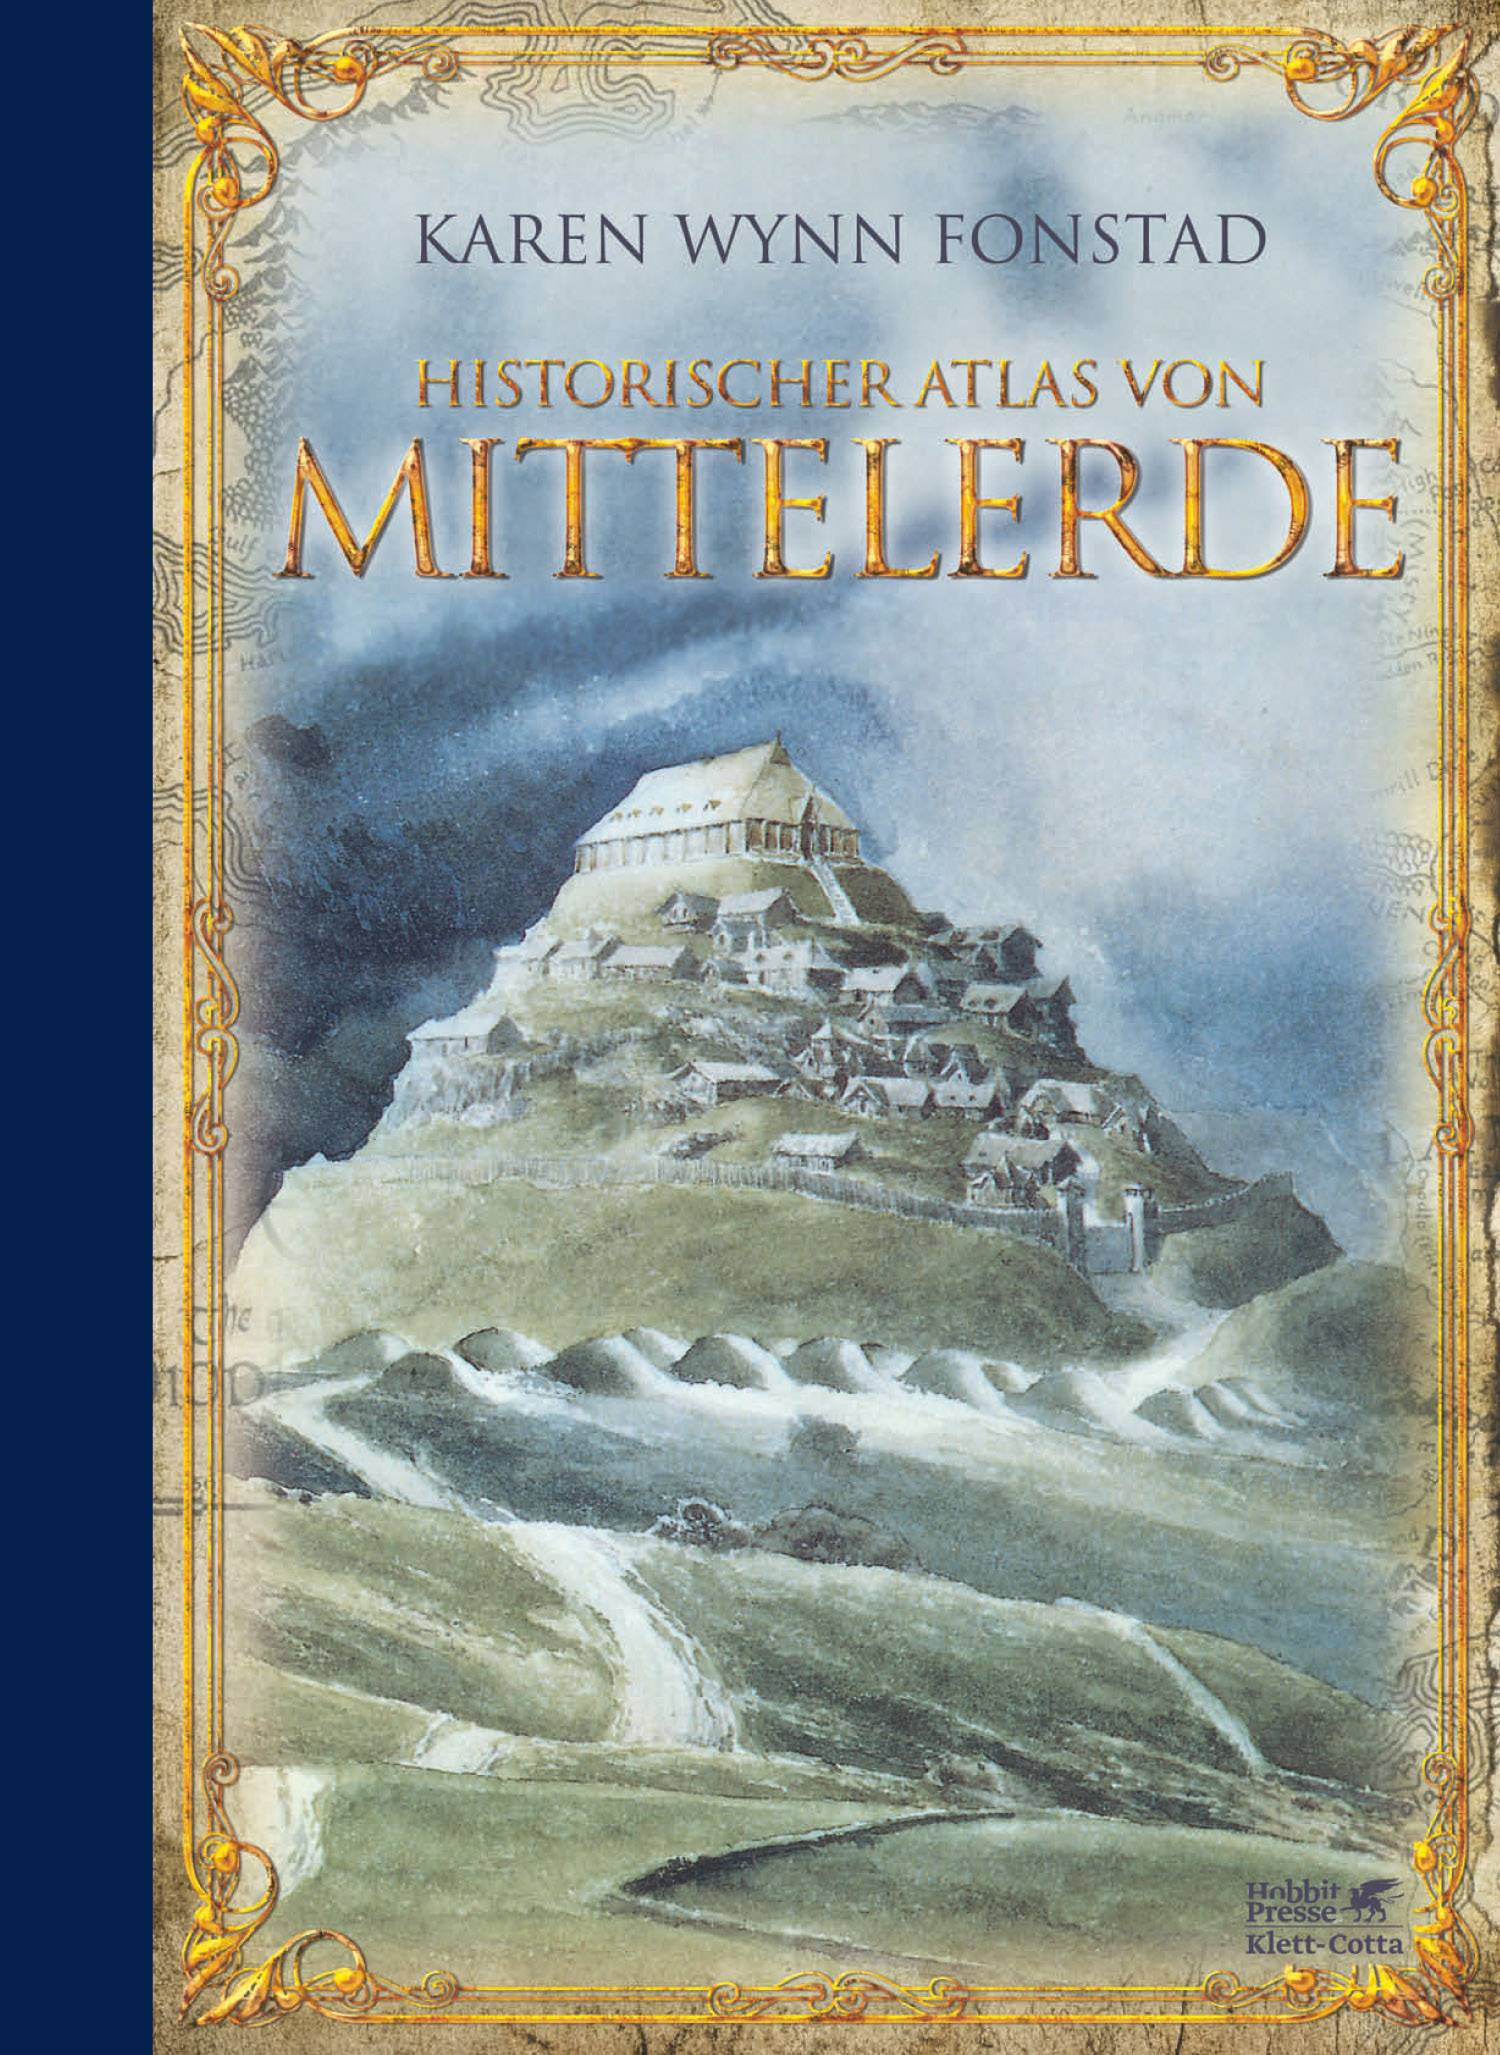 Karen Wynn Fonstads "Historischer Atlas von Mittelerde"